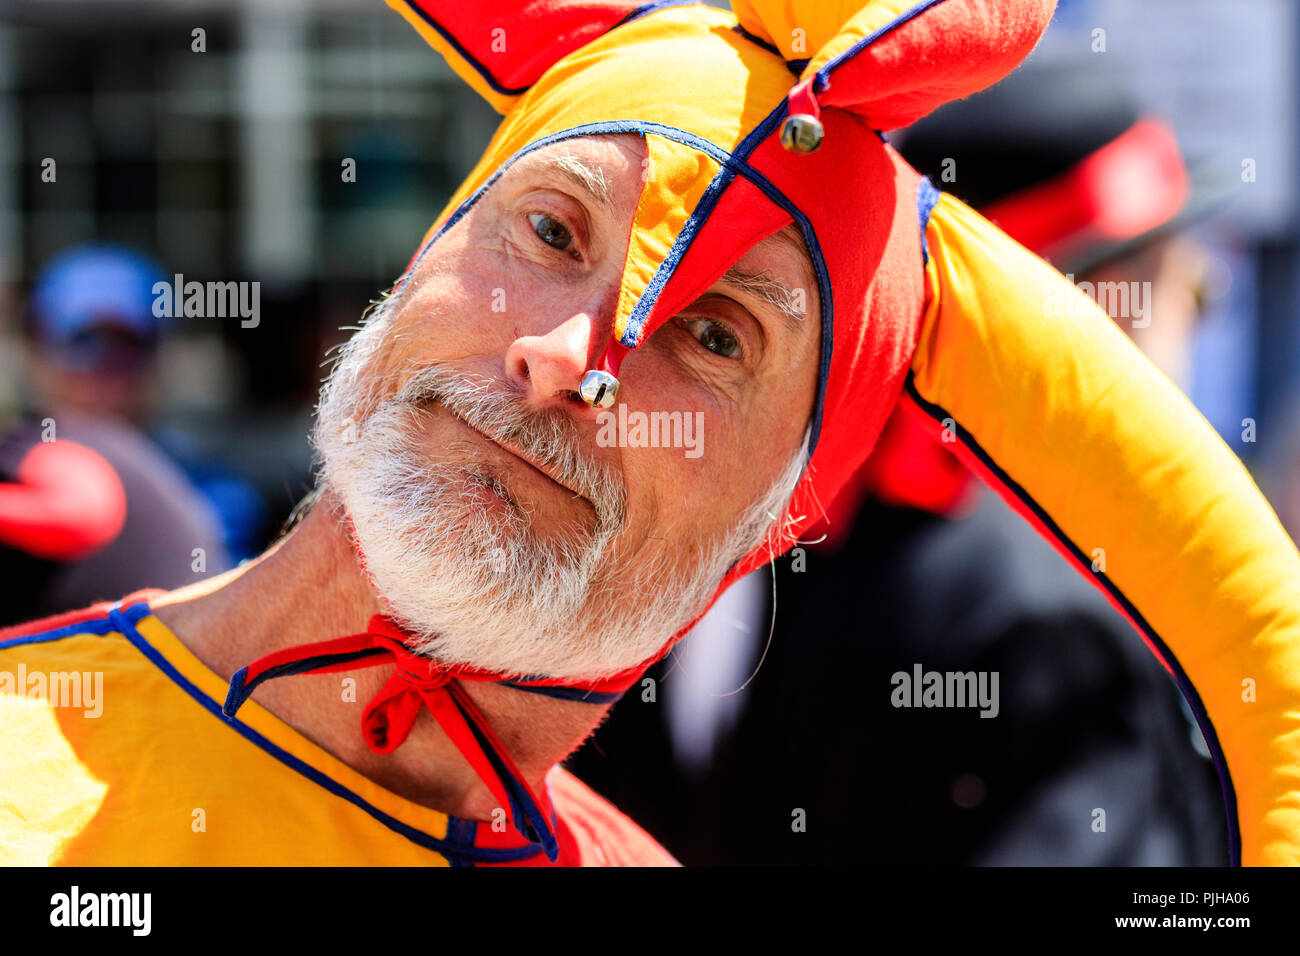 Homme mûr en orange et jaune costume médiéval, fou, clown. Portrait de face, comme il a l'air directement au spectateur, le contact oculaire, barbe grise. Banque D'Images